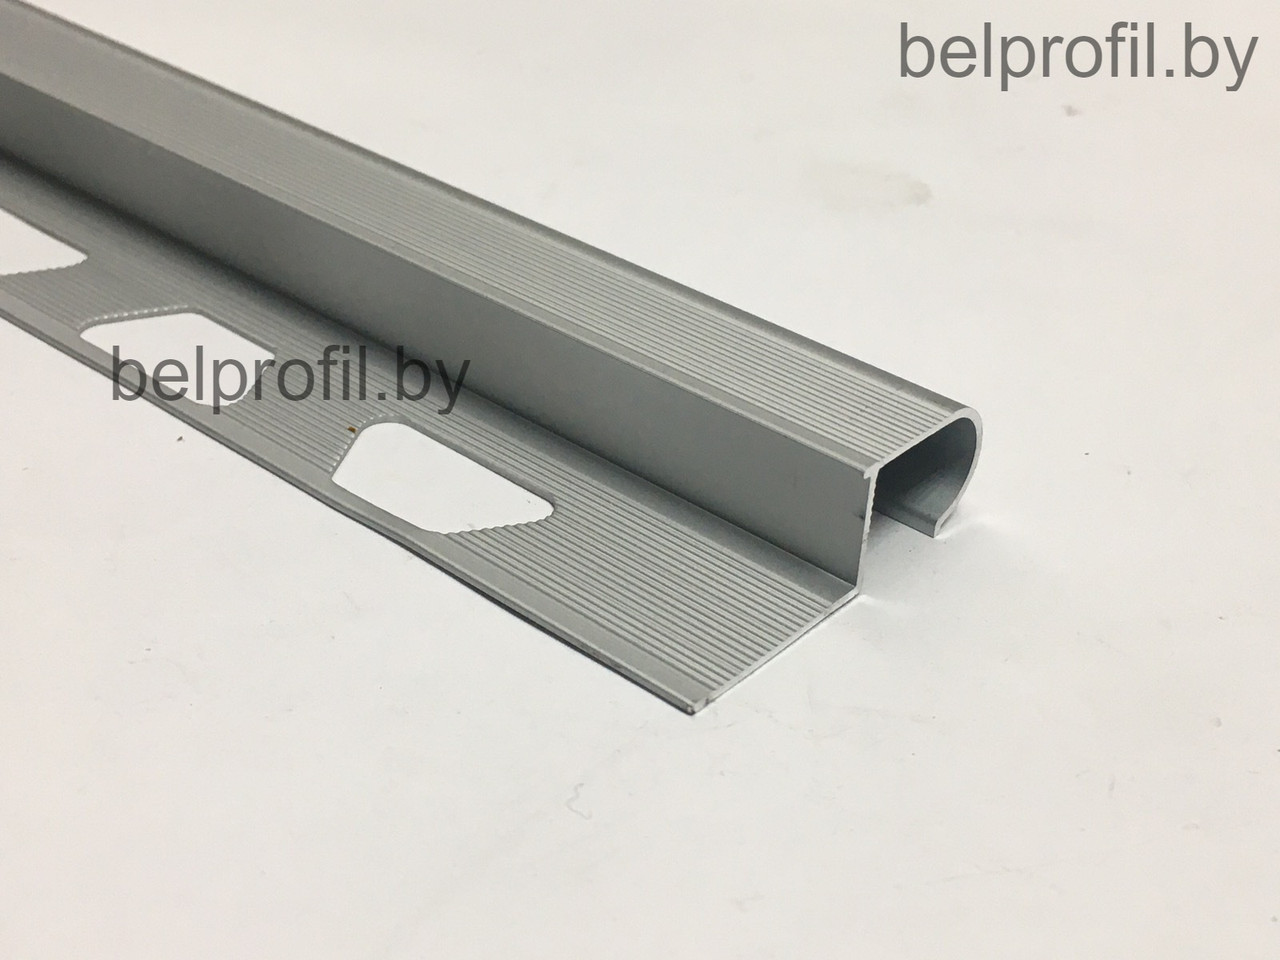 Профиль для облицовки ступеней PV-49/10 мм, серебро 270 см